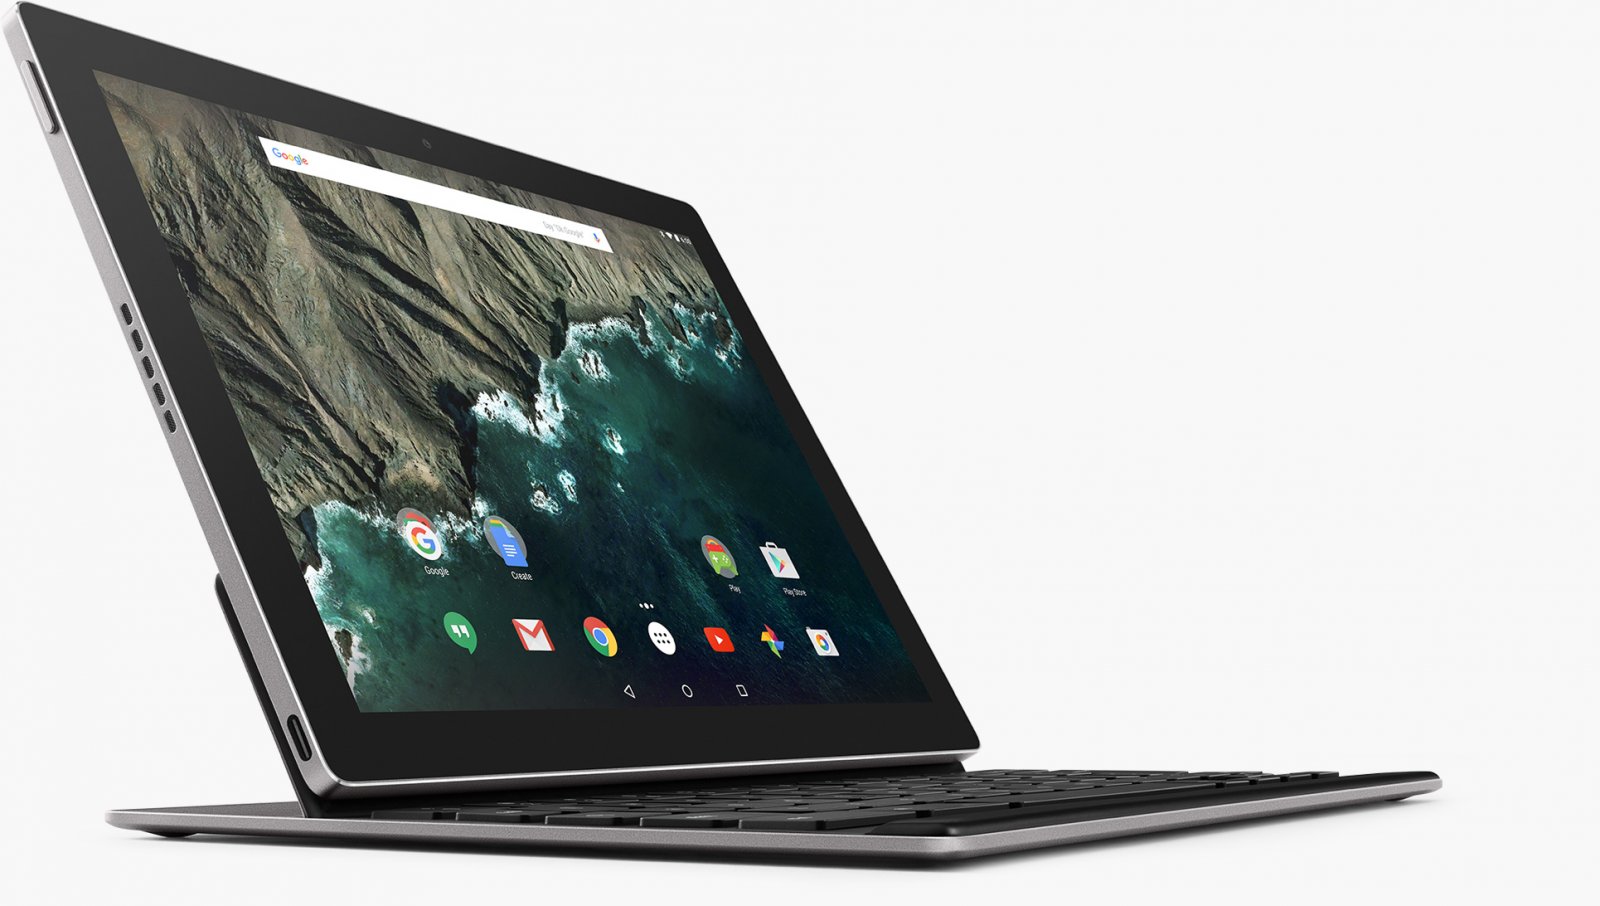 Giới thiệu tablet Google Pixel C giá từ 499$.jpg